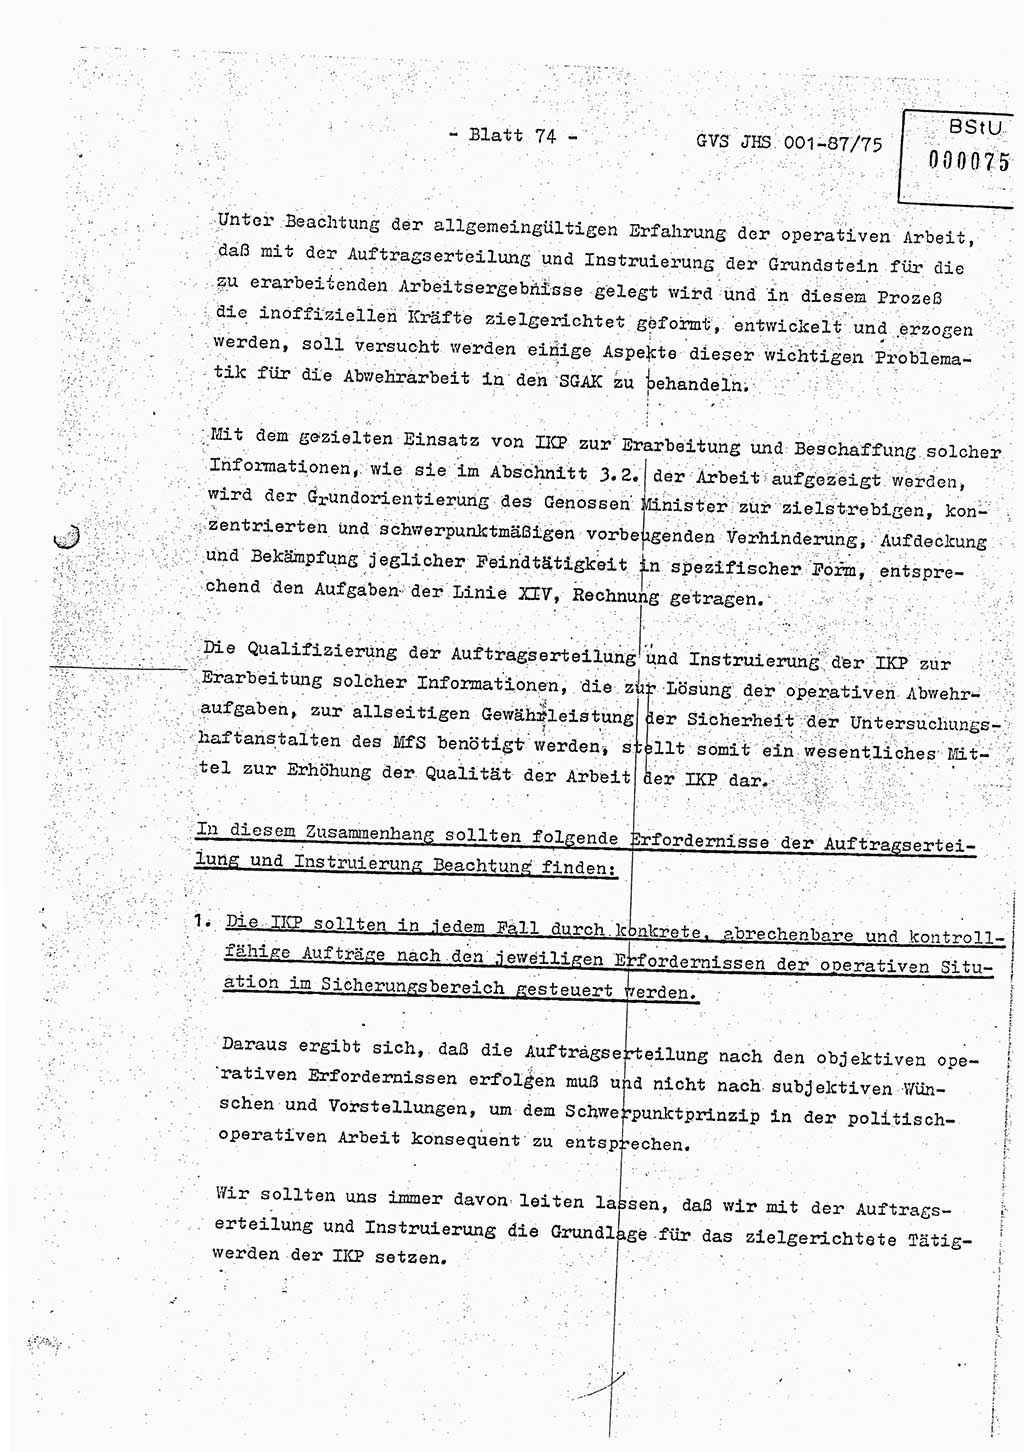 Diplomarbeit Hauptmann Volkmar Heinz (Abt. ⅩⅣ), Oberleutnant Lothar Rüdiger (BV Lpz. Abt. Ⅺ), Ministerium für Staatssicherheit (MfS) [Deutsche Demokratische Republik (DDR)], Juristische Hochschule (JHS), Geheime Verschlußsache (GVS) o001-87/75, Potsdam 1975, Seite 74 (Dipl.-Arb. MfS DDR JHS GVS o001-87/75 1975, S. 74)